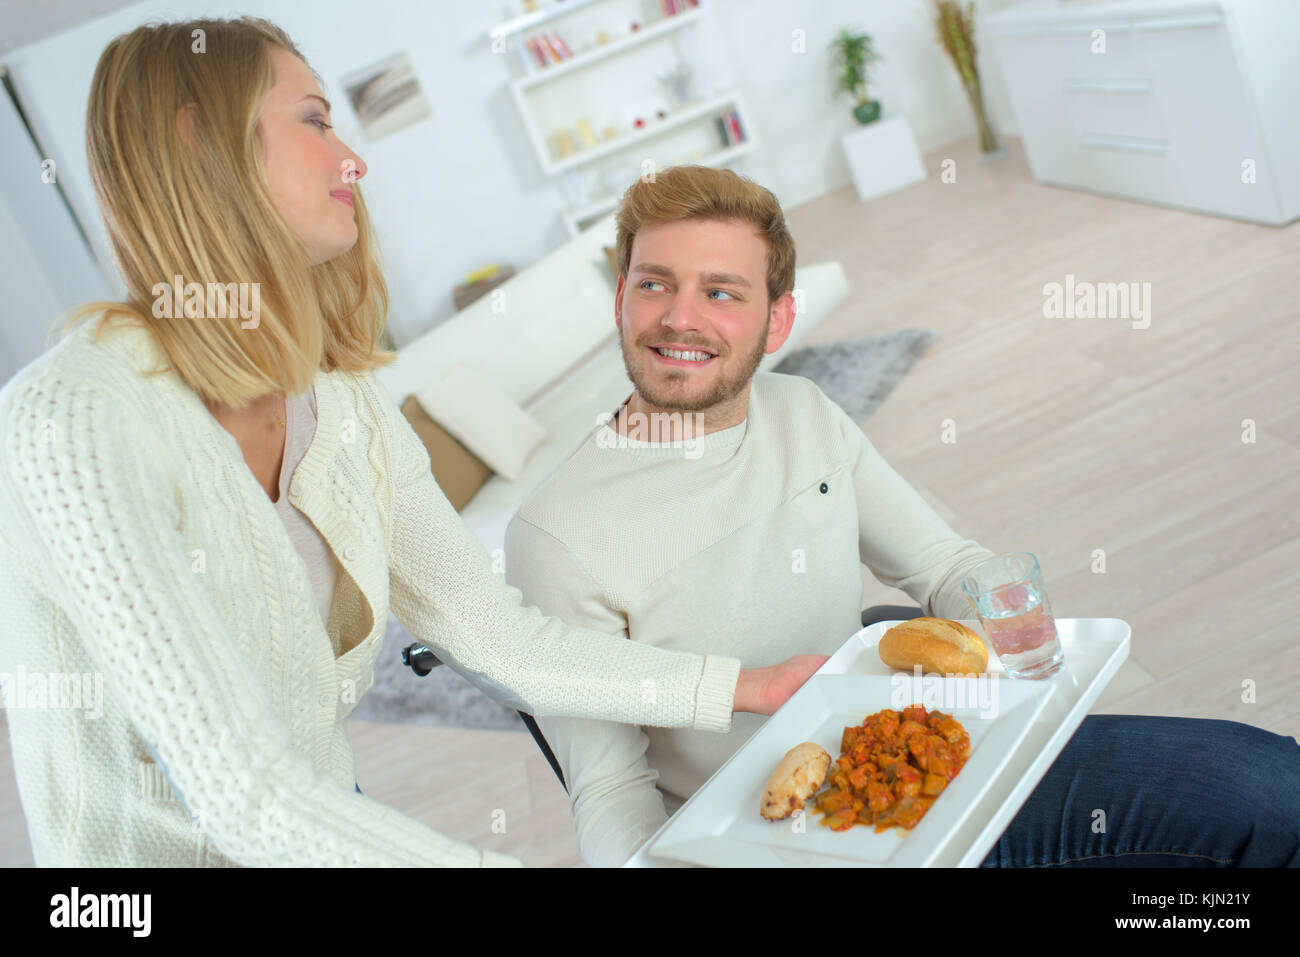 Frau der Mann mit einer Mahlzeit serviert Stockfoto